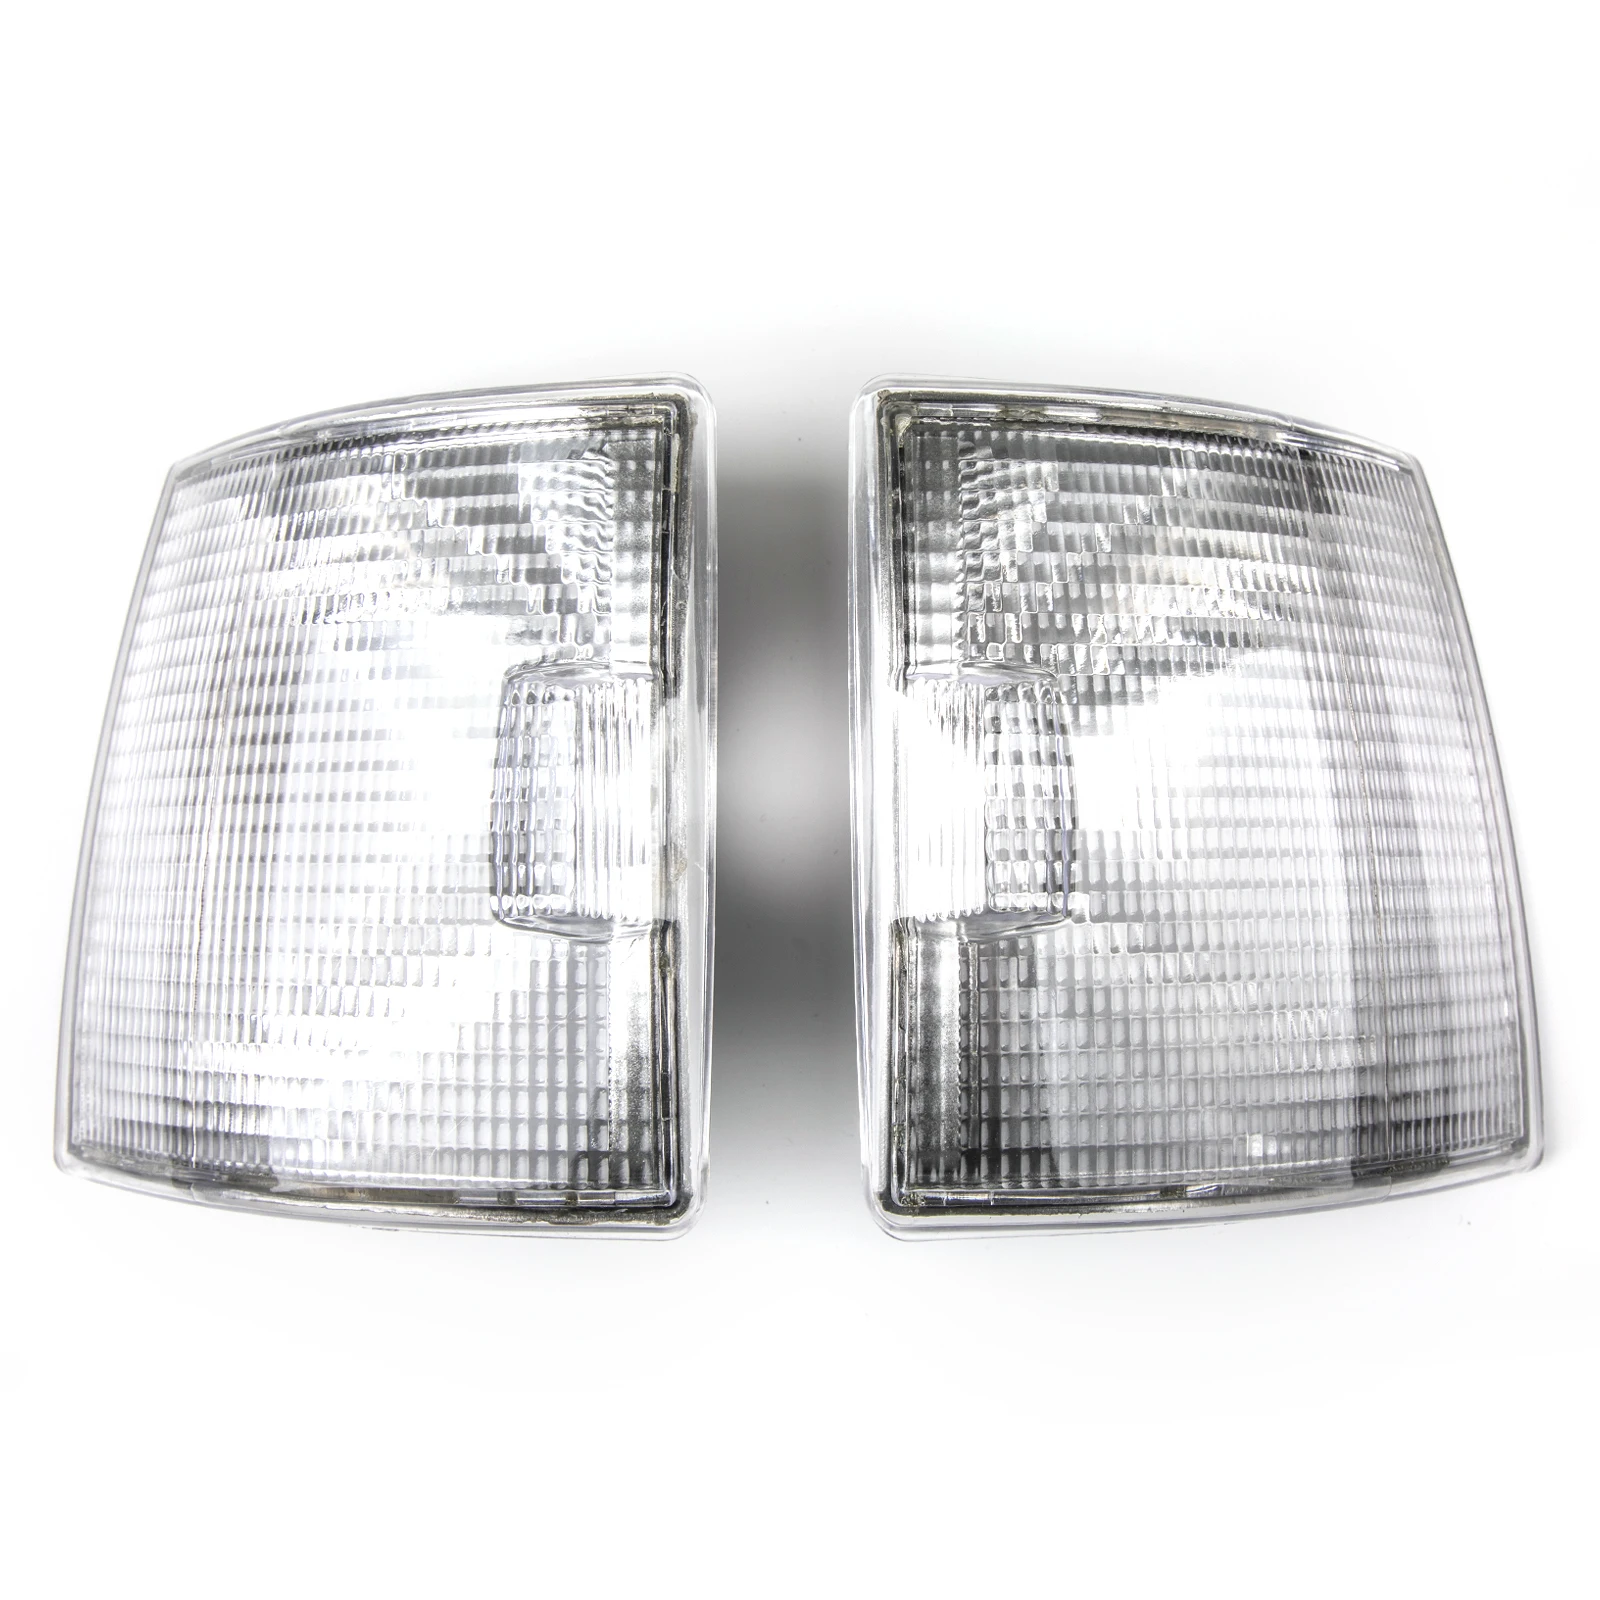 

Corner Lights Turn Signal Indicator Lamps for VW Transporter T4 BJ 90 91 92 93 94 95 96 97 98 99 00 01 02 03 04 White